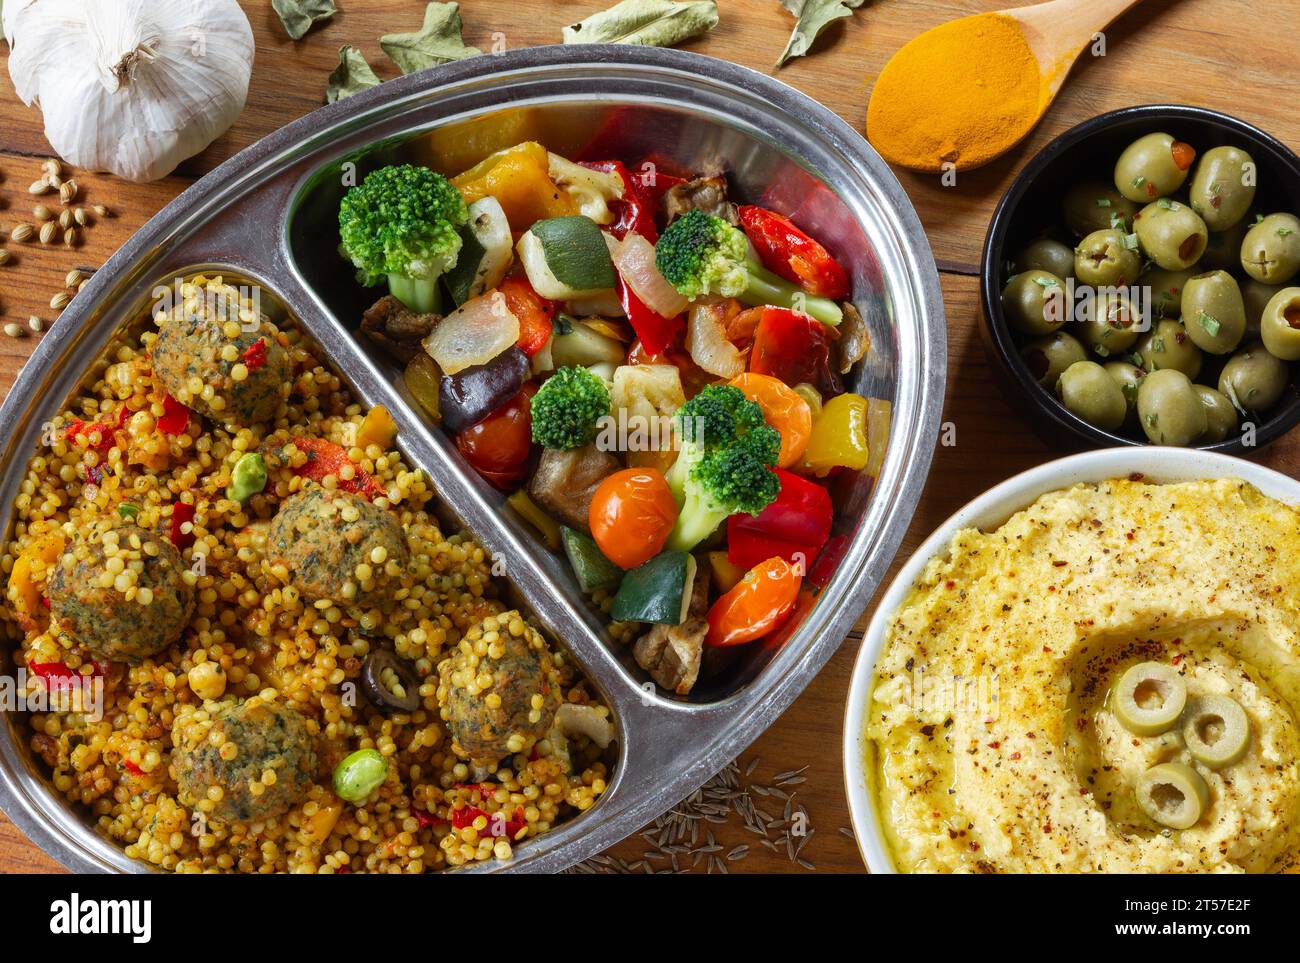 Repas végétalien/végétarien, avec houmous, falafel, légumes grillés et olives Banque D'Images